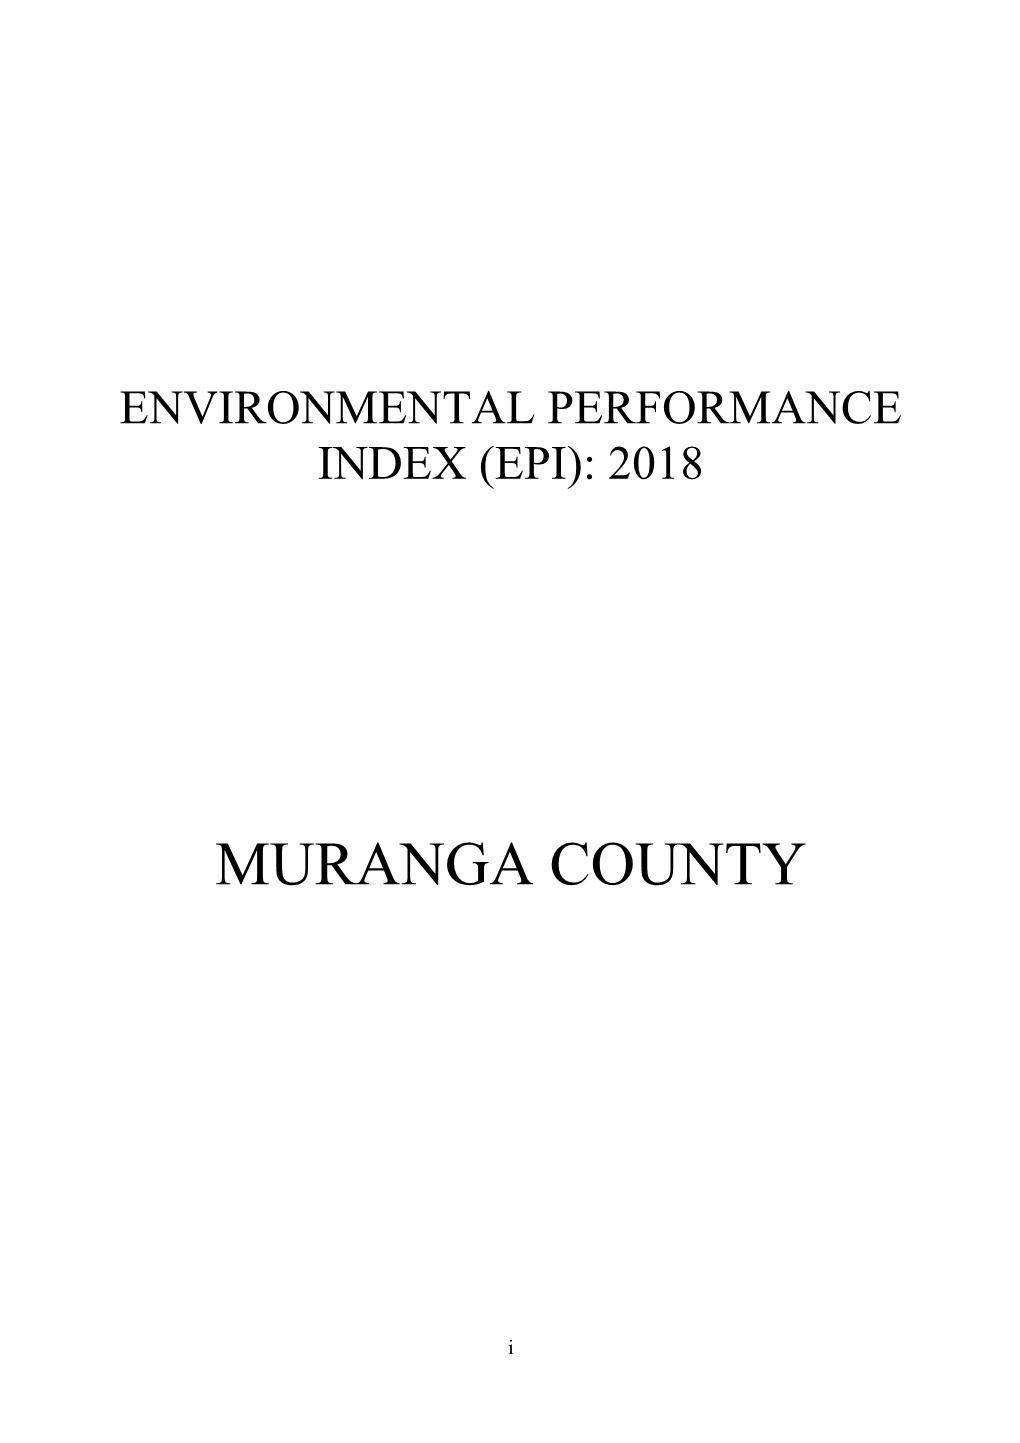 Muranga County